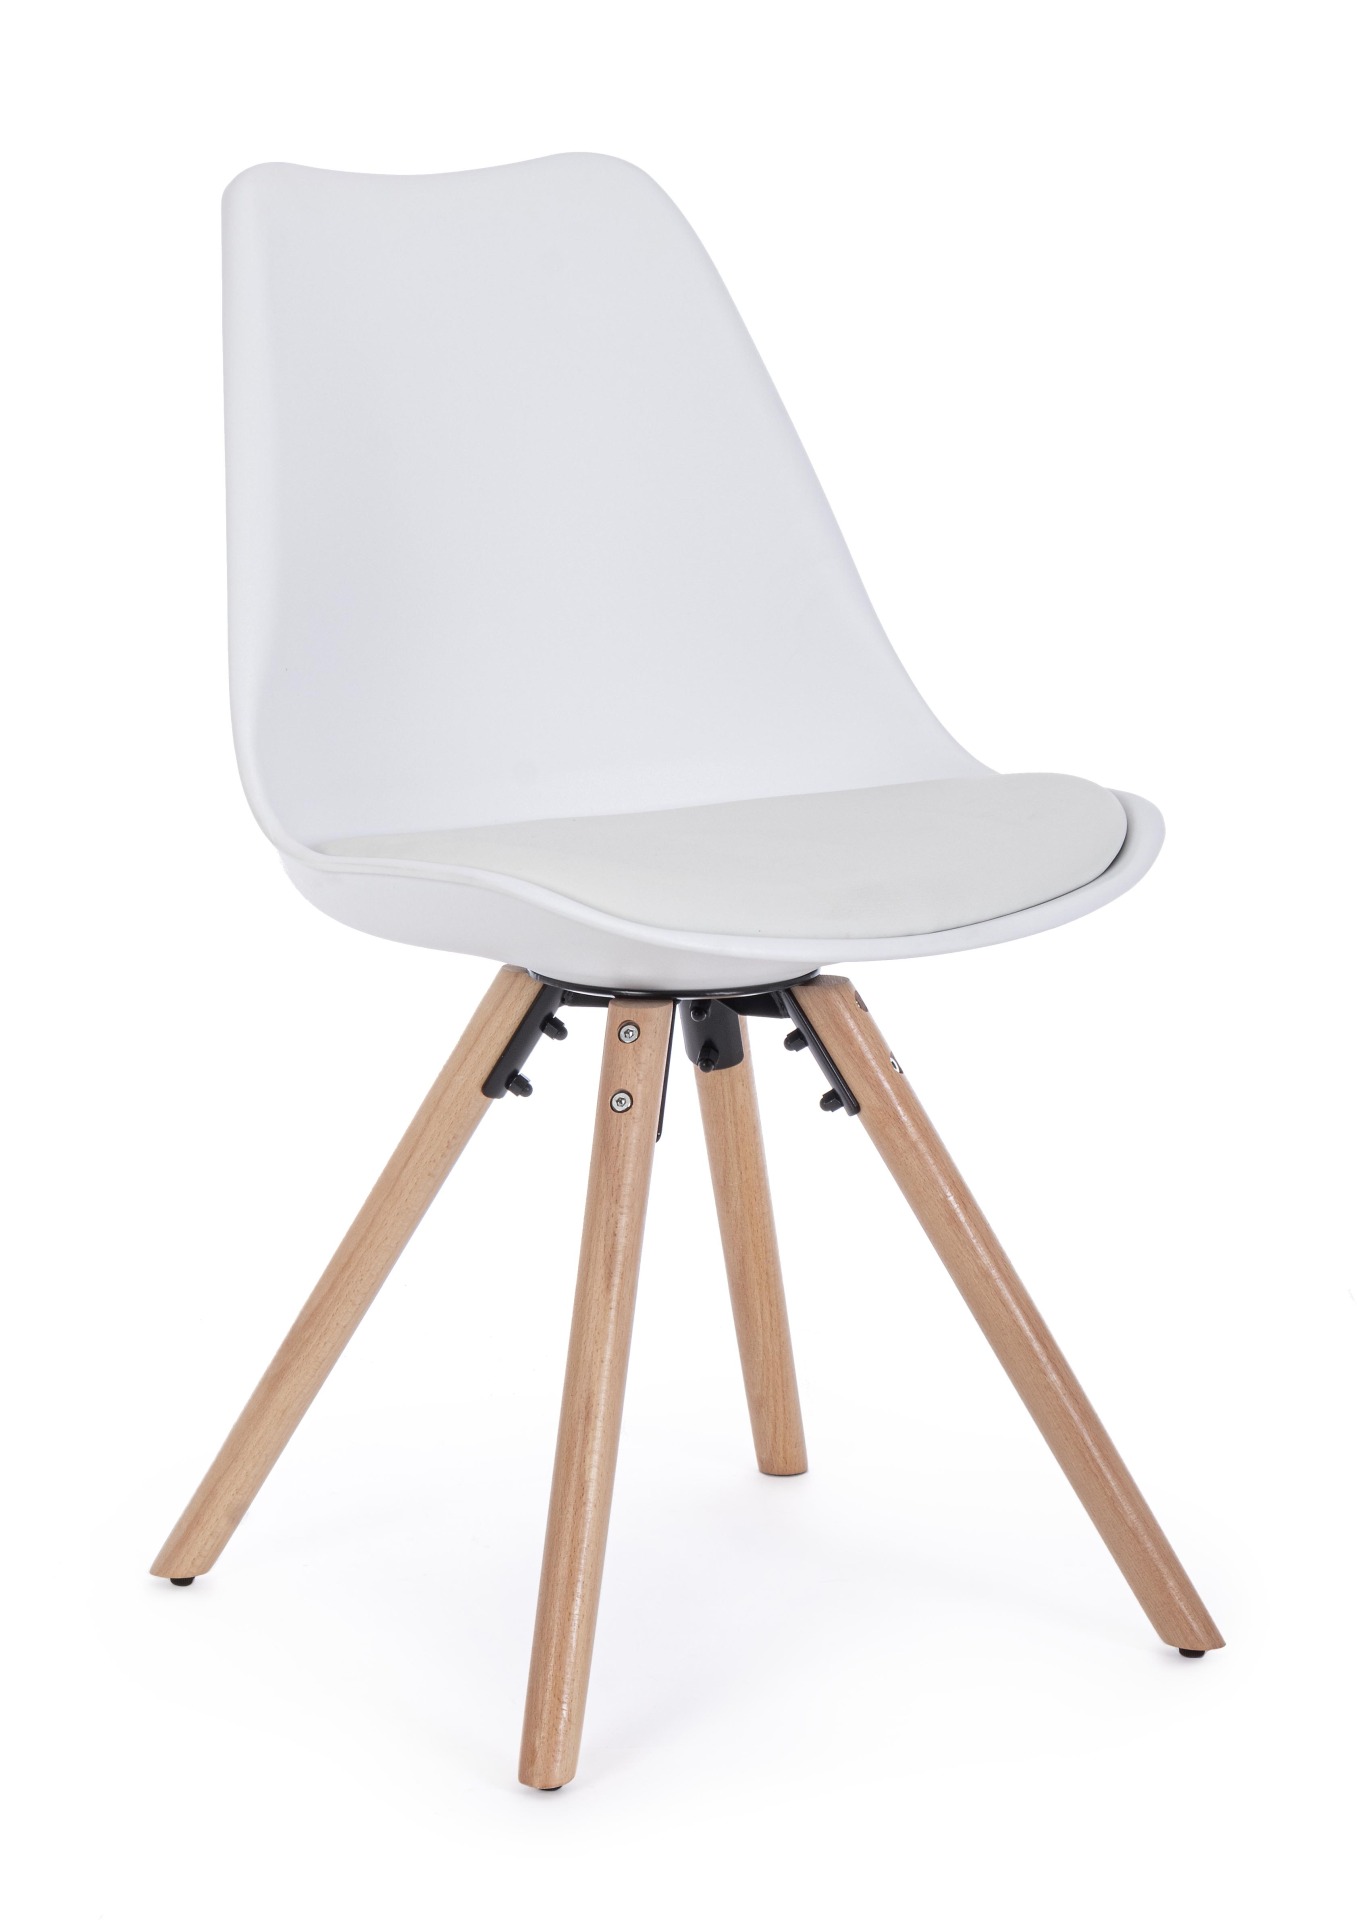 Der Stuhl New Trend überzeugt mit seinem modernem Design. Gefertigt wurde der Stuhl aus Kunststoff, welcher einen weißen Farbton besitzt. Das Gestell ist aus Buchenholz. Die Sitzhöhe des Stuhls ist 49 cm